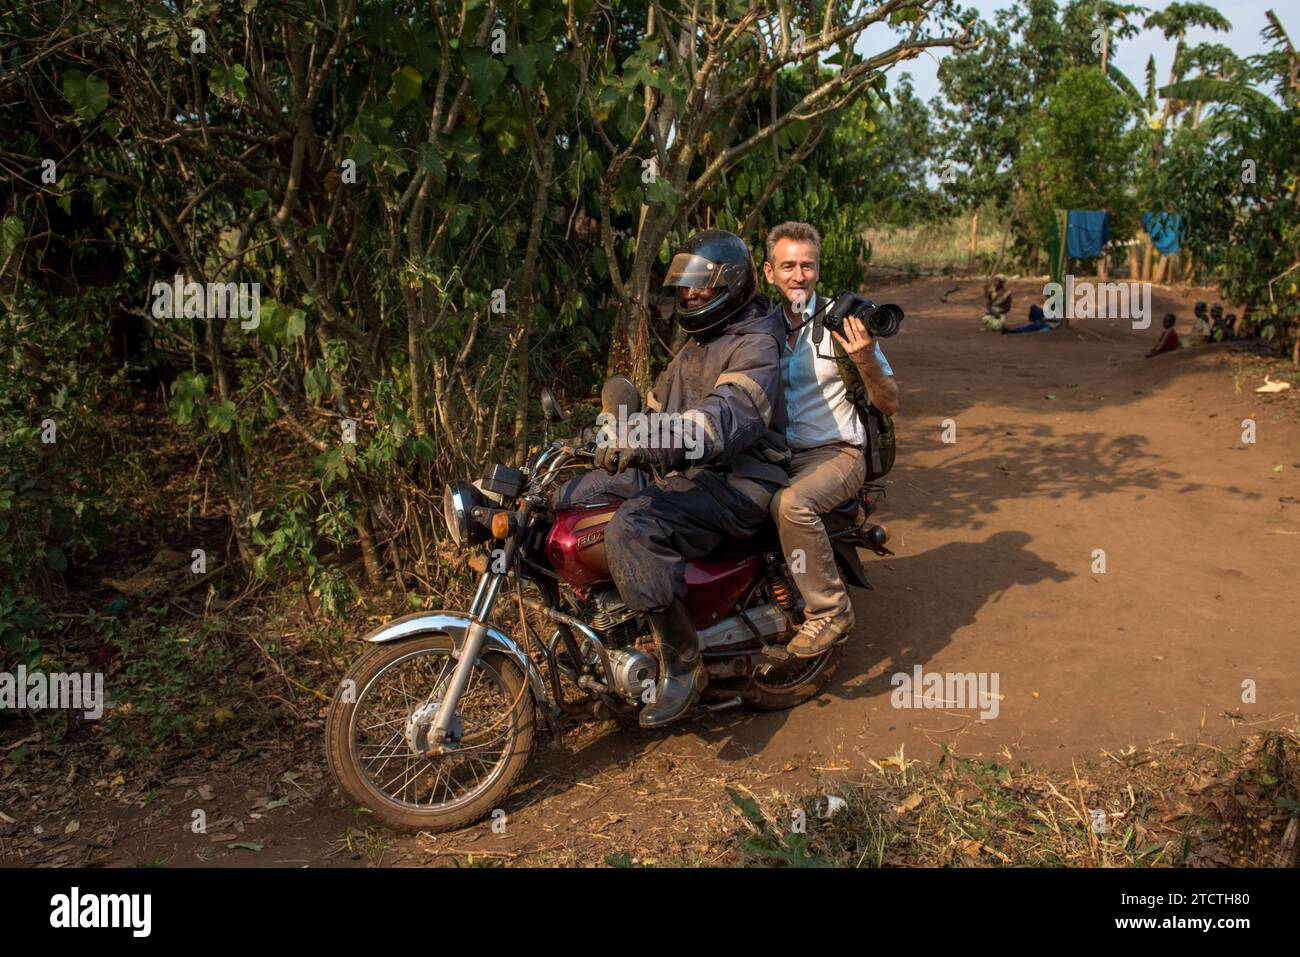 Fotografo che accompagna un funzionario in prestito dell'istituto di microfinanza Encot mentre va a trovare i suoi clienti da un remoto villaggio, regione occidentale, UG Foto Stock